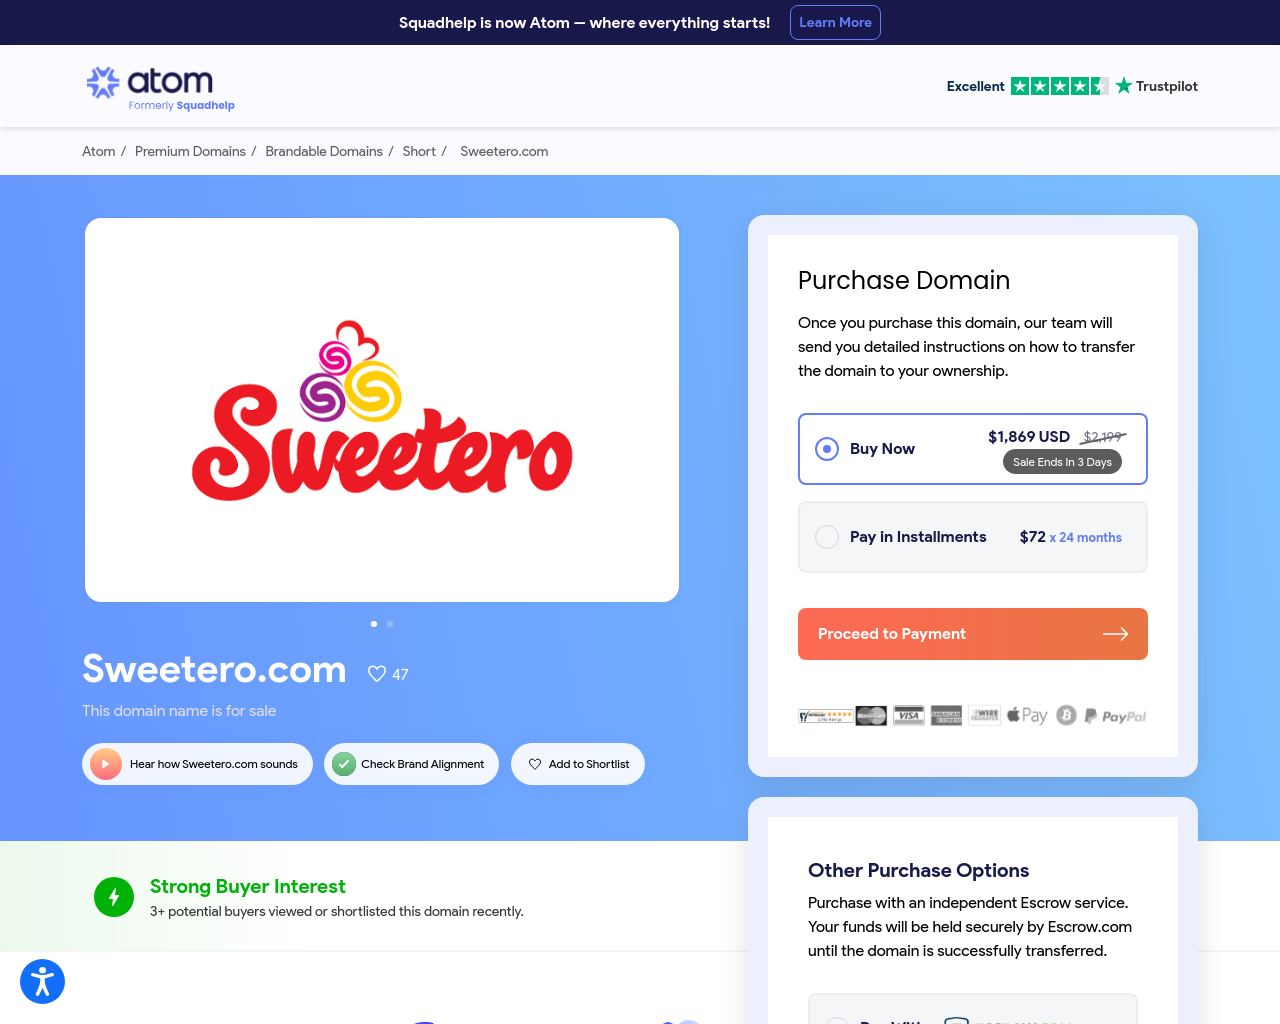 sweetero.com